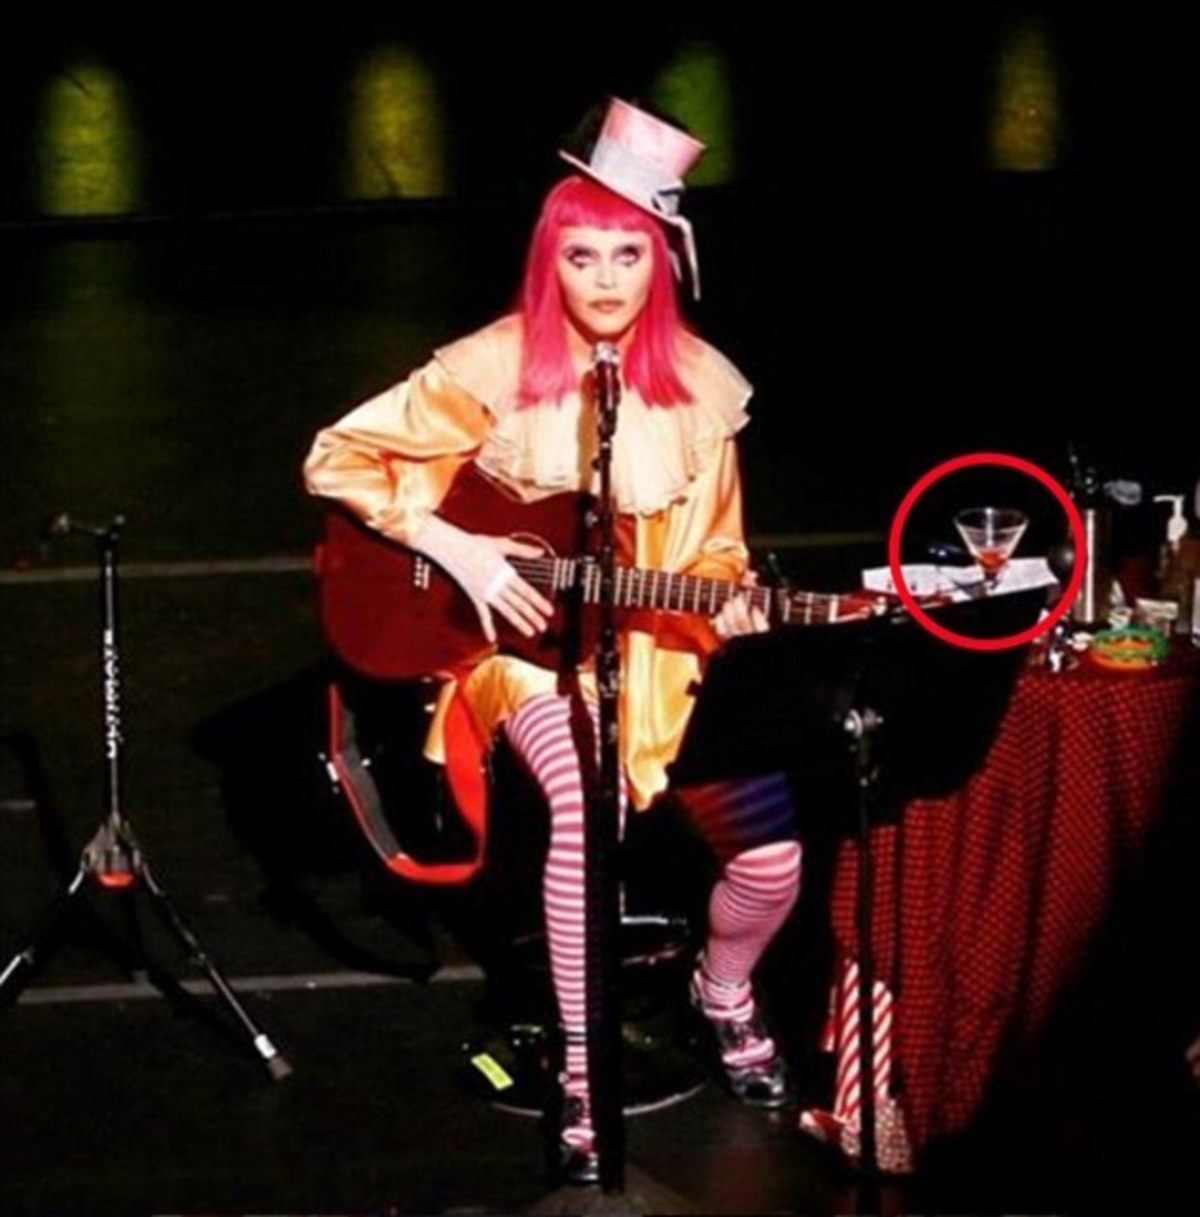 Λιάρδα πάλι στη σκηνή η Madonna: Φέρτε μου να πιώ! (ΦΩΤΟ, VIDEO)